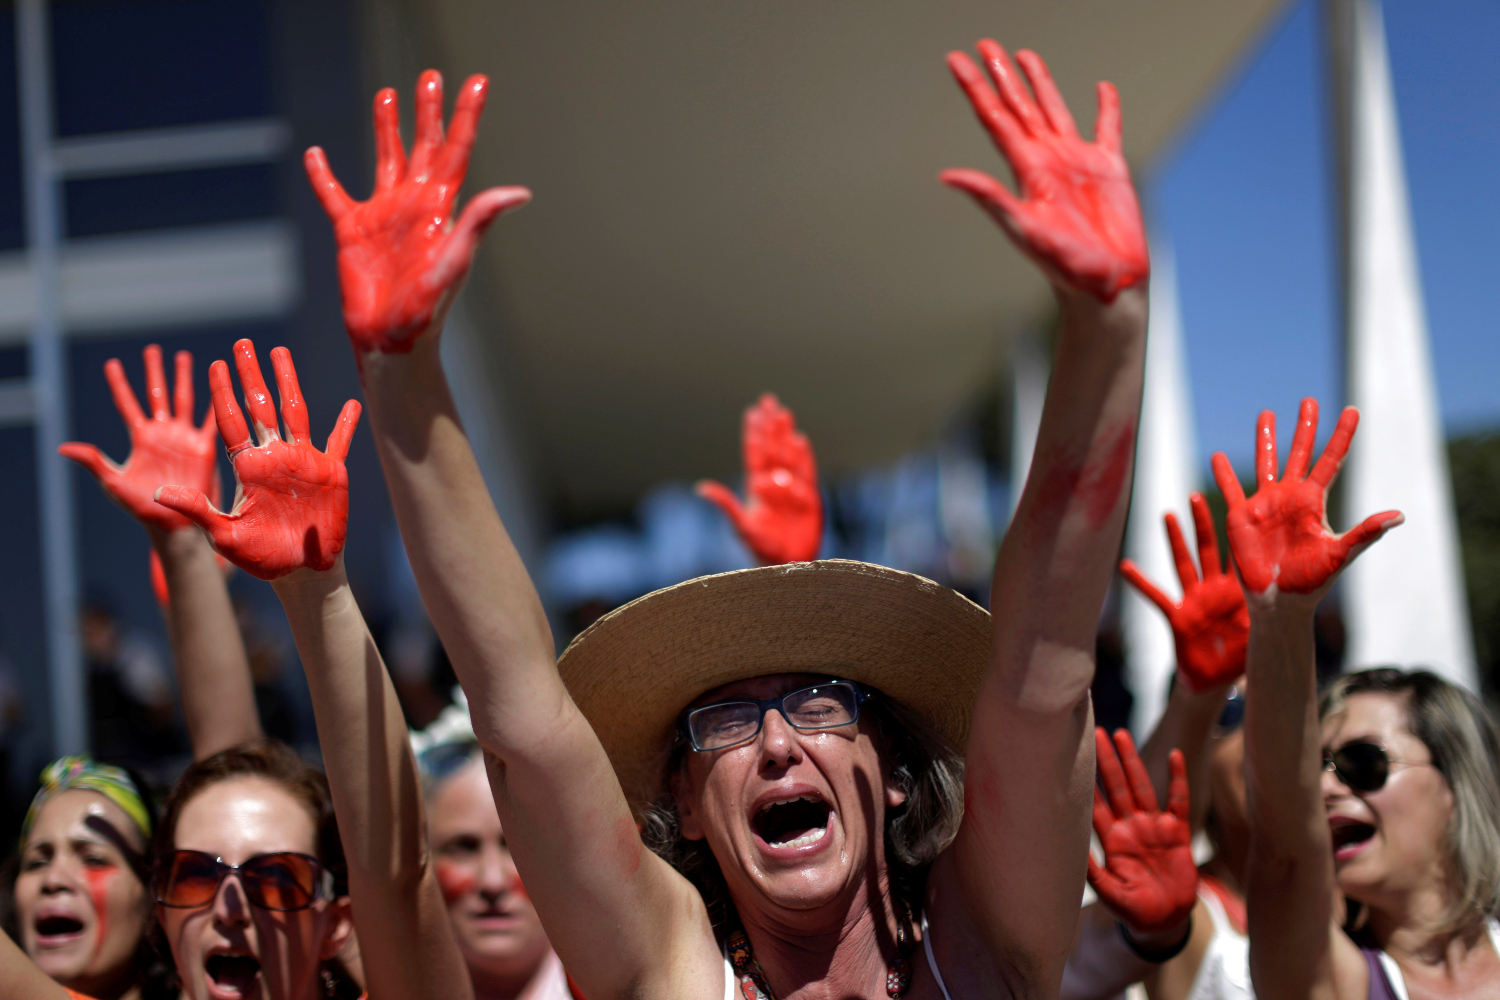 Sigue impune la violación colectiva a una menor que conmociona a Brasil